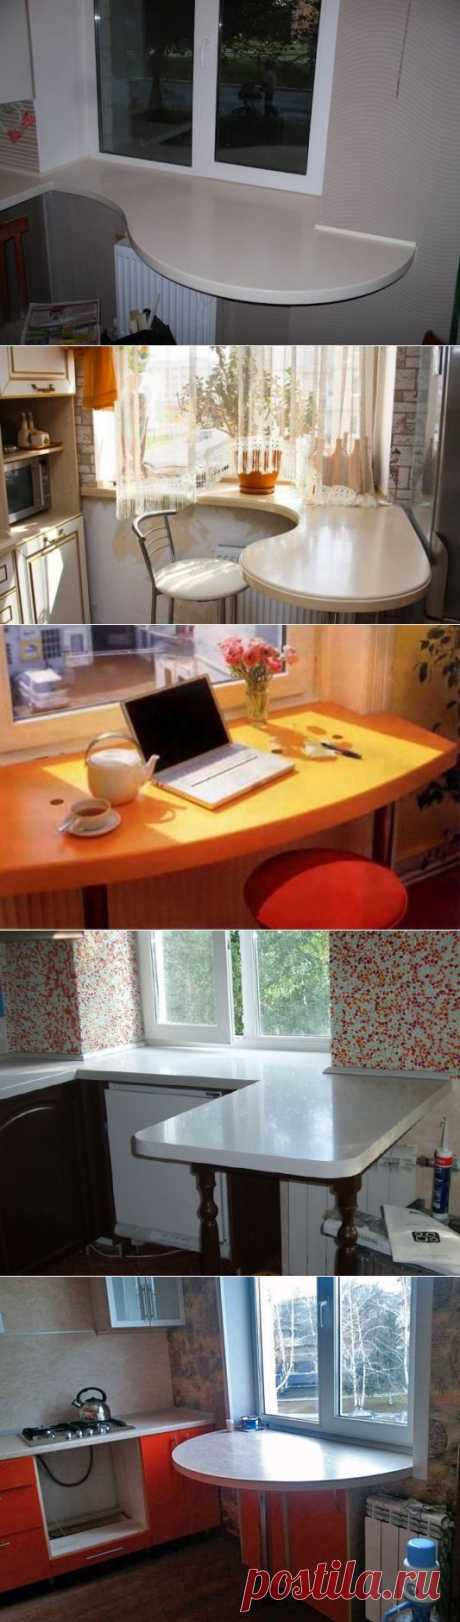 Кухонный стол вместо подоконника